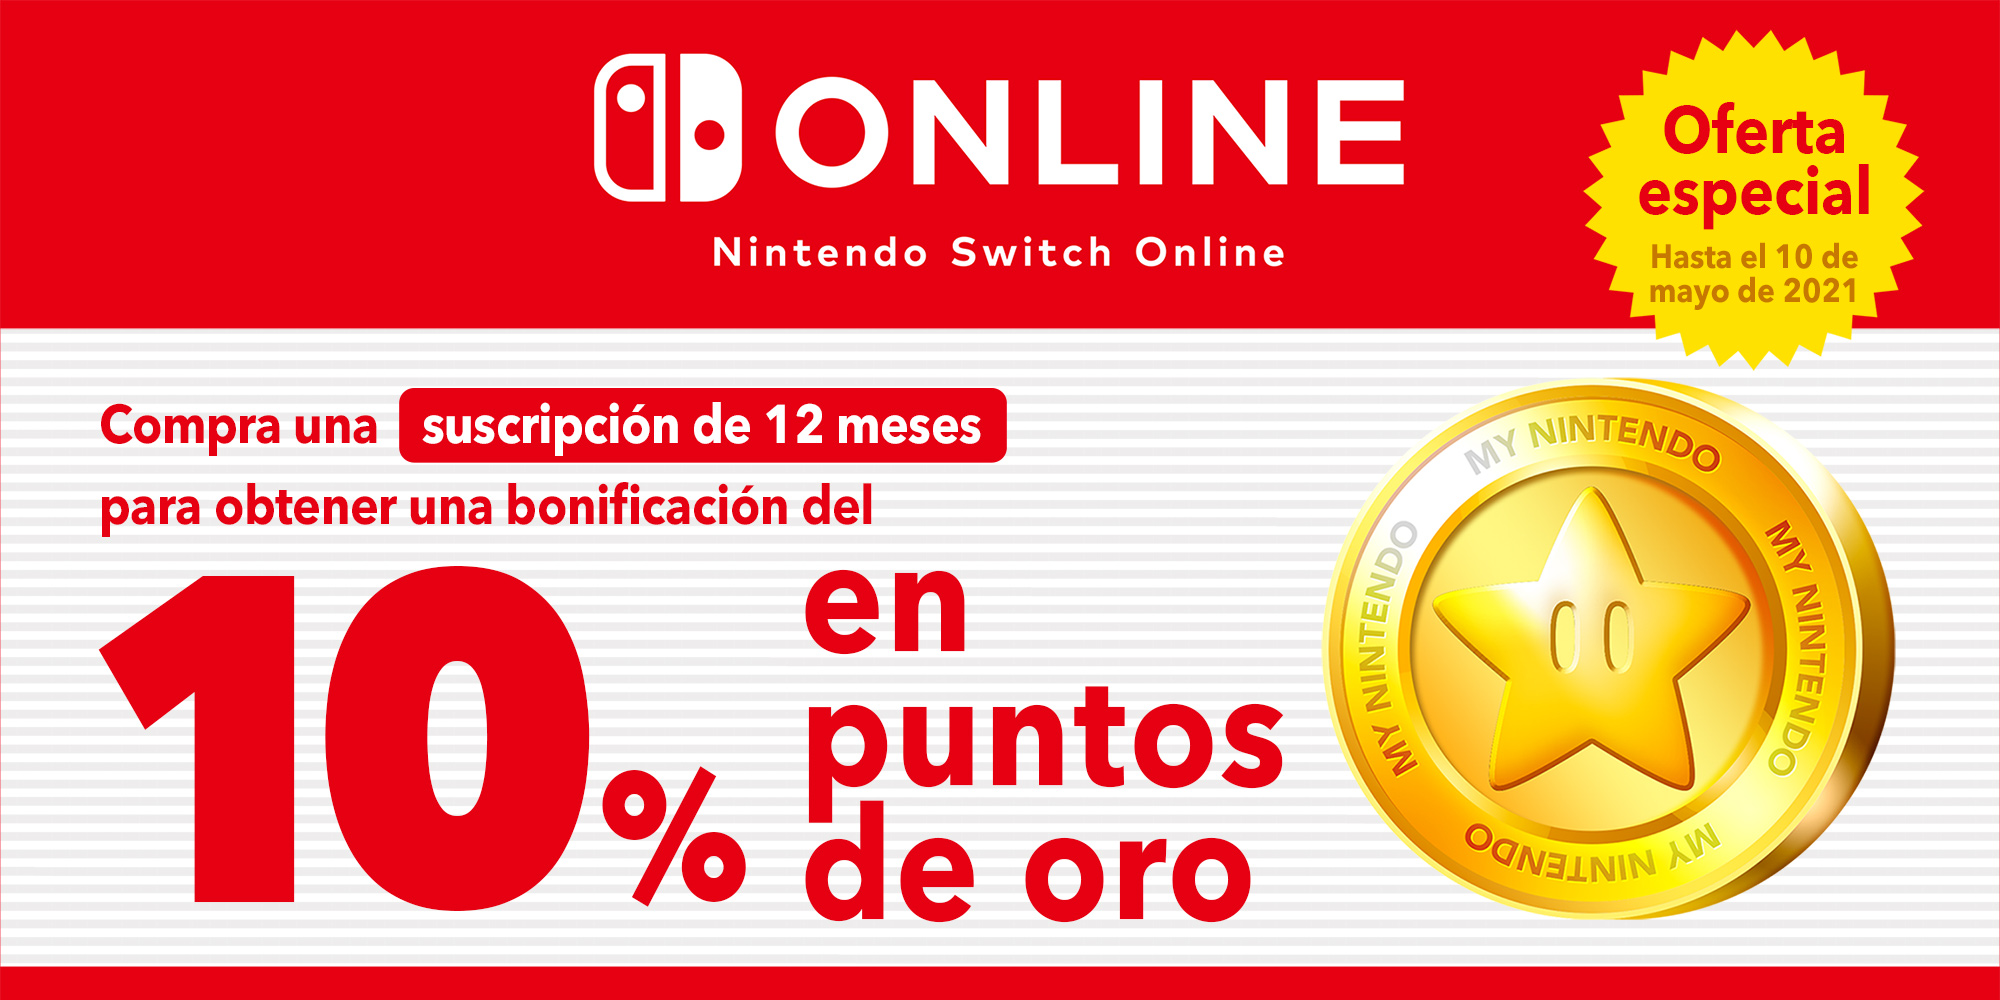 Oferta especial: ¡Consigue hasta 3,50 € en puntos de oro gracias a una suscripción de 12 meses a Nintendo Switch Online!